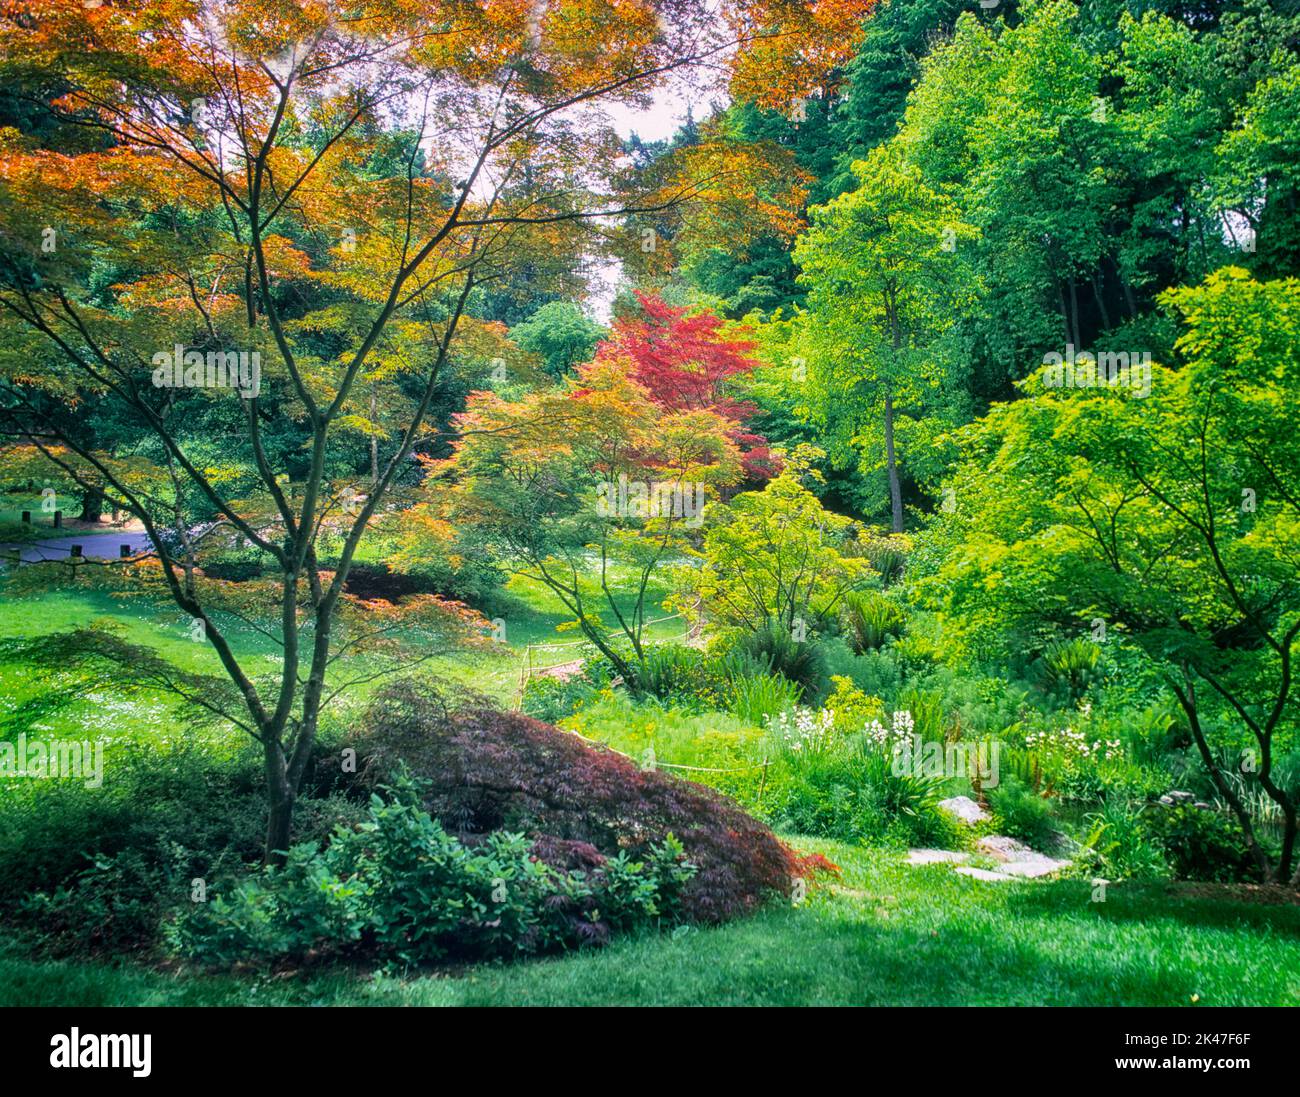 Une variété d'érable japonais au printemps. Washington Park Arboretum, Seattle, Washington Banque D'Images